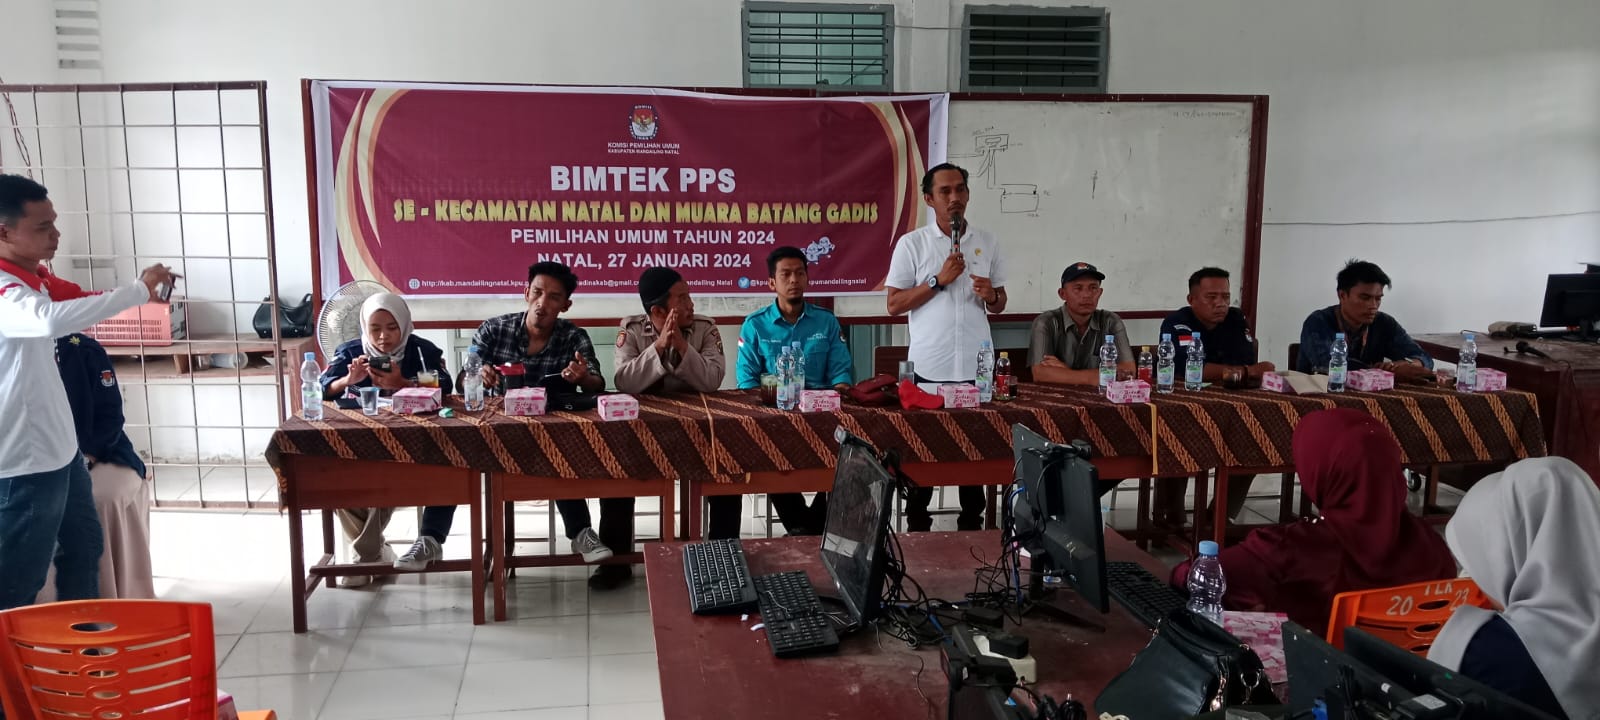 Koordinator Divisi Sosdiklih Parmas KPU Madina Ilu Prima Sagara Nasution,S.Sos saat memberikan paparan di aula SMK 1 Natal, Sabtu (27/1/2024) fhoto : Tim.